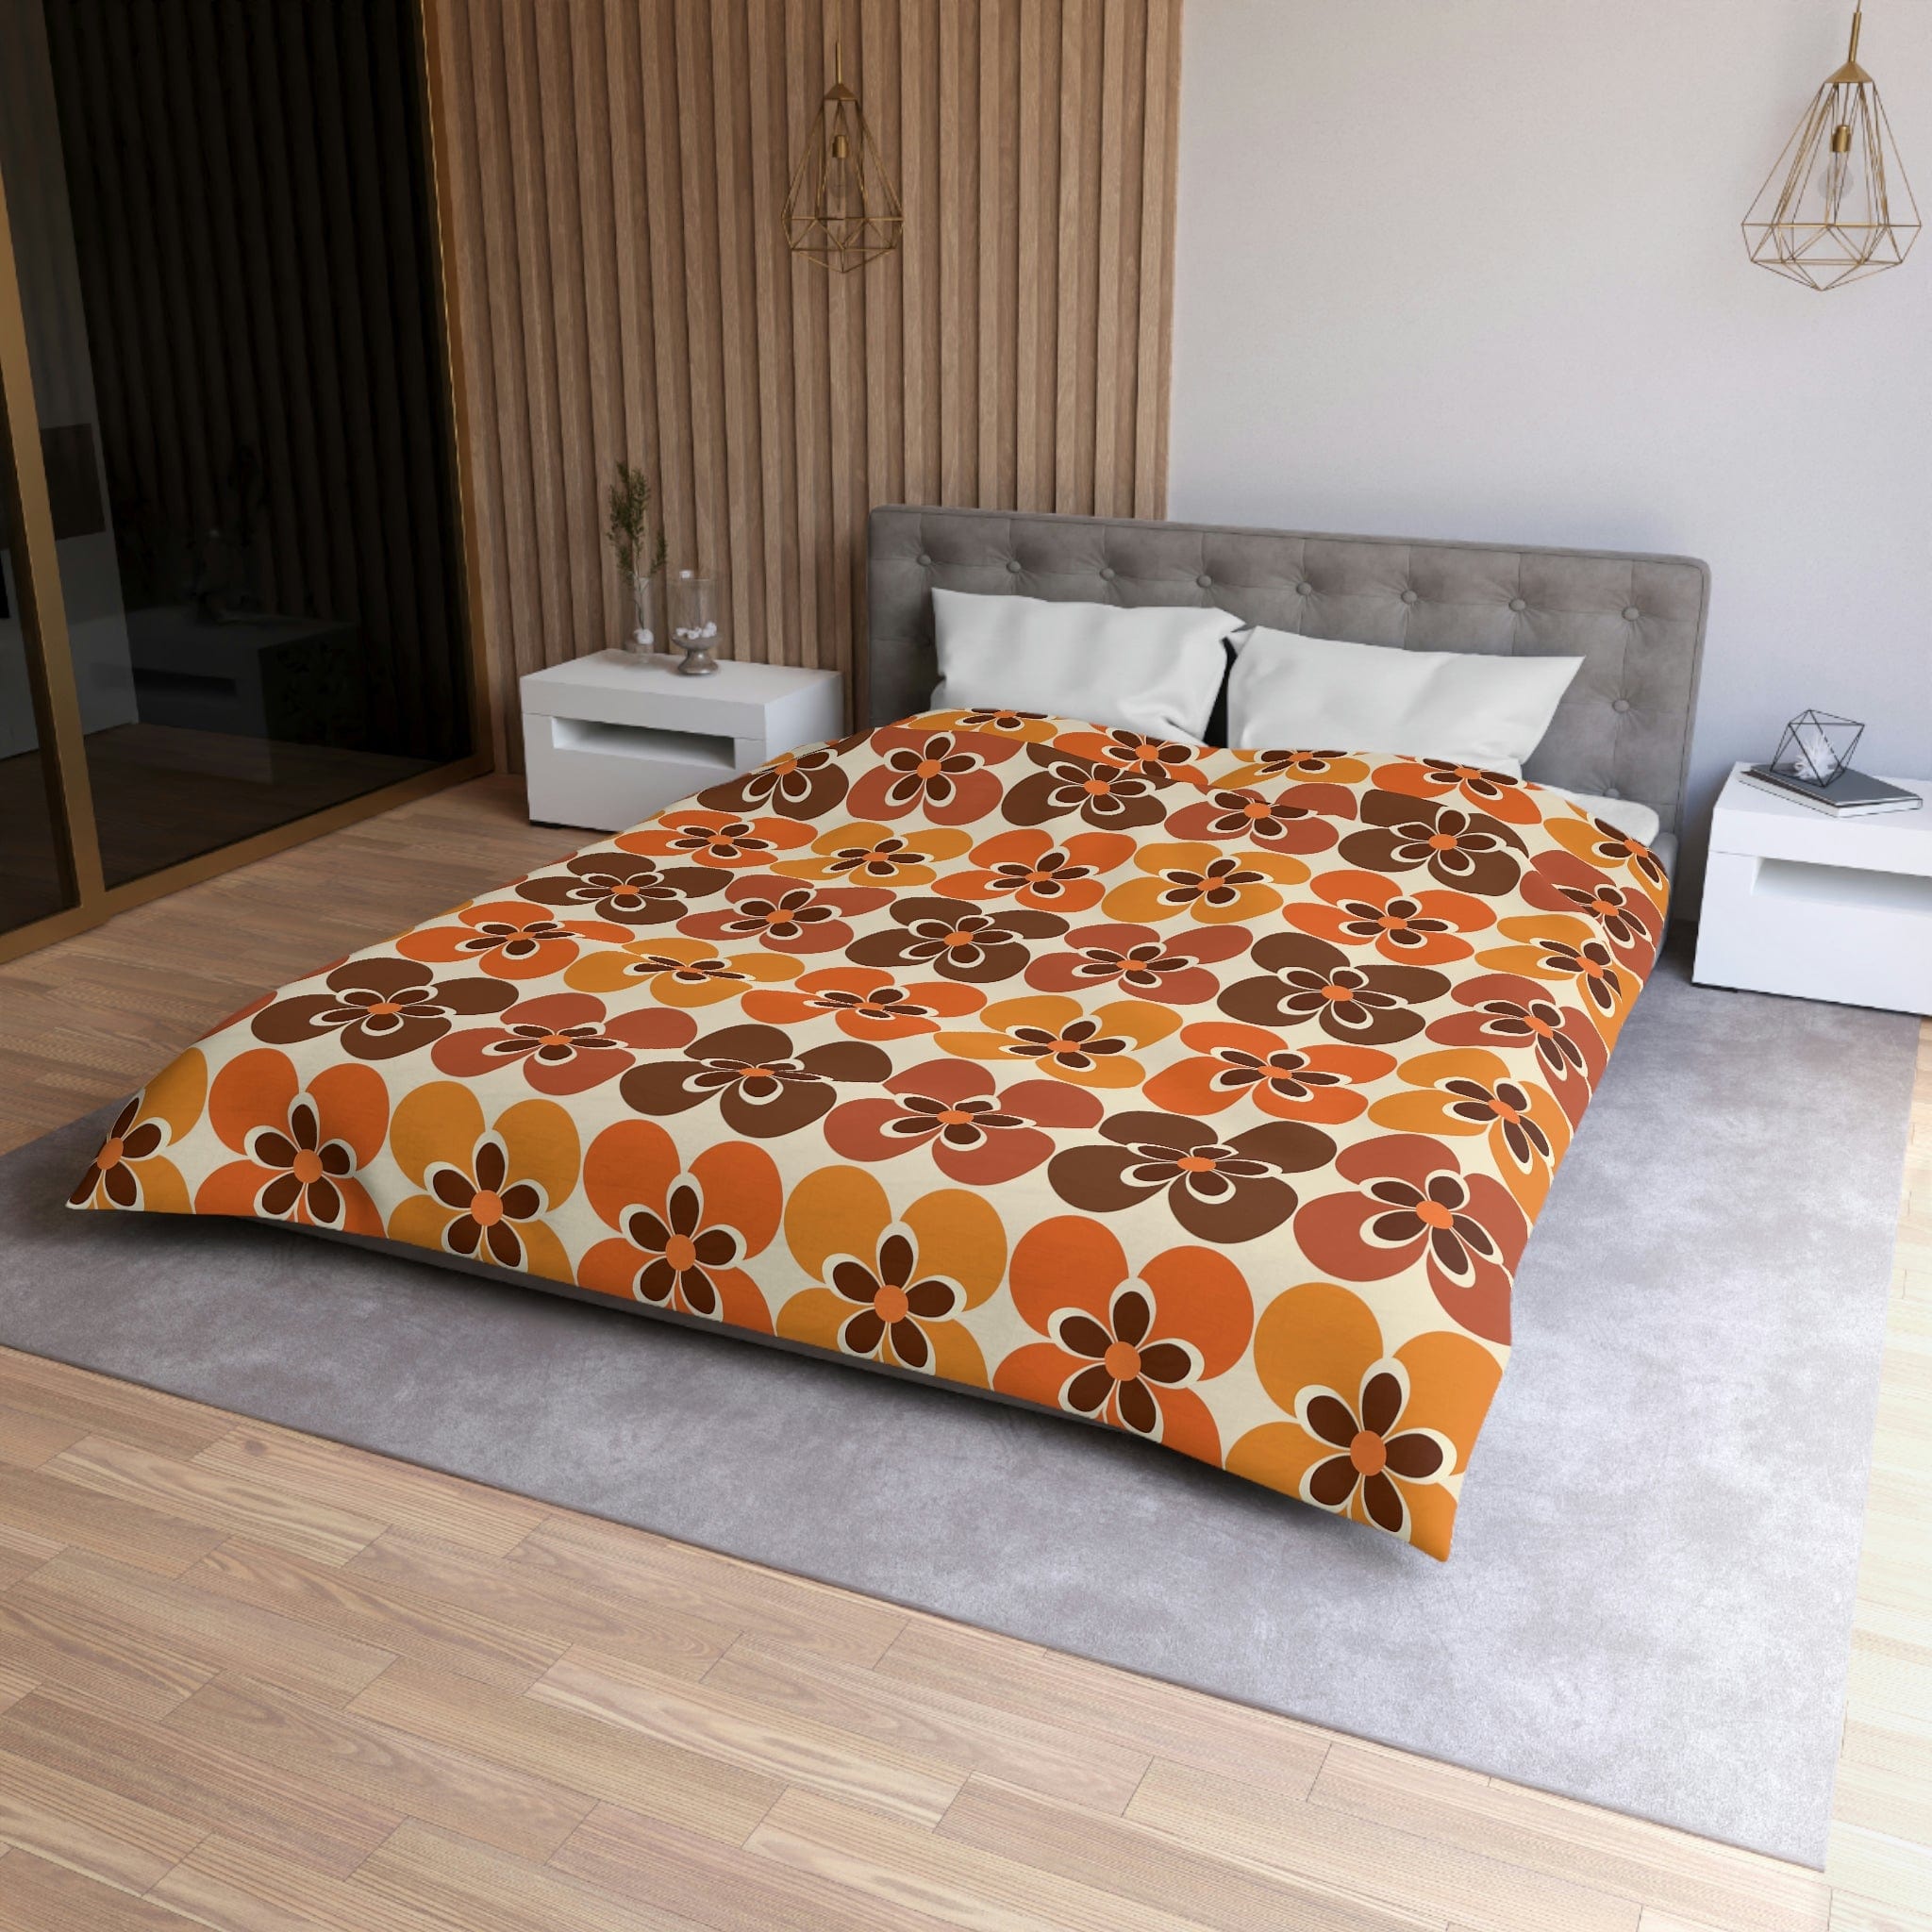 Flower Power Retro Bedding, Brown, Orange, Cream Groovy 70&